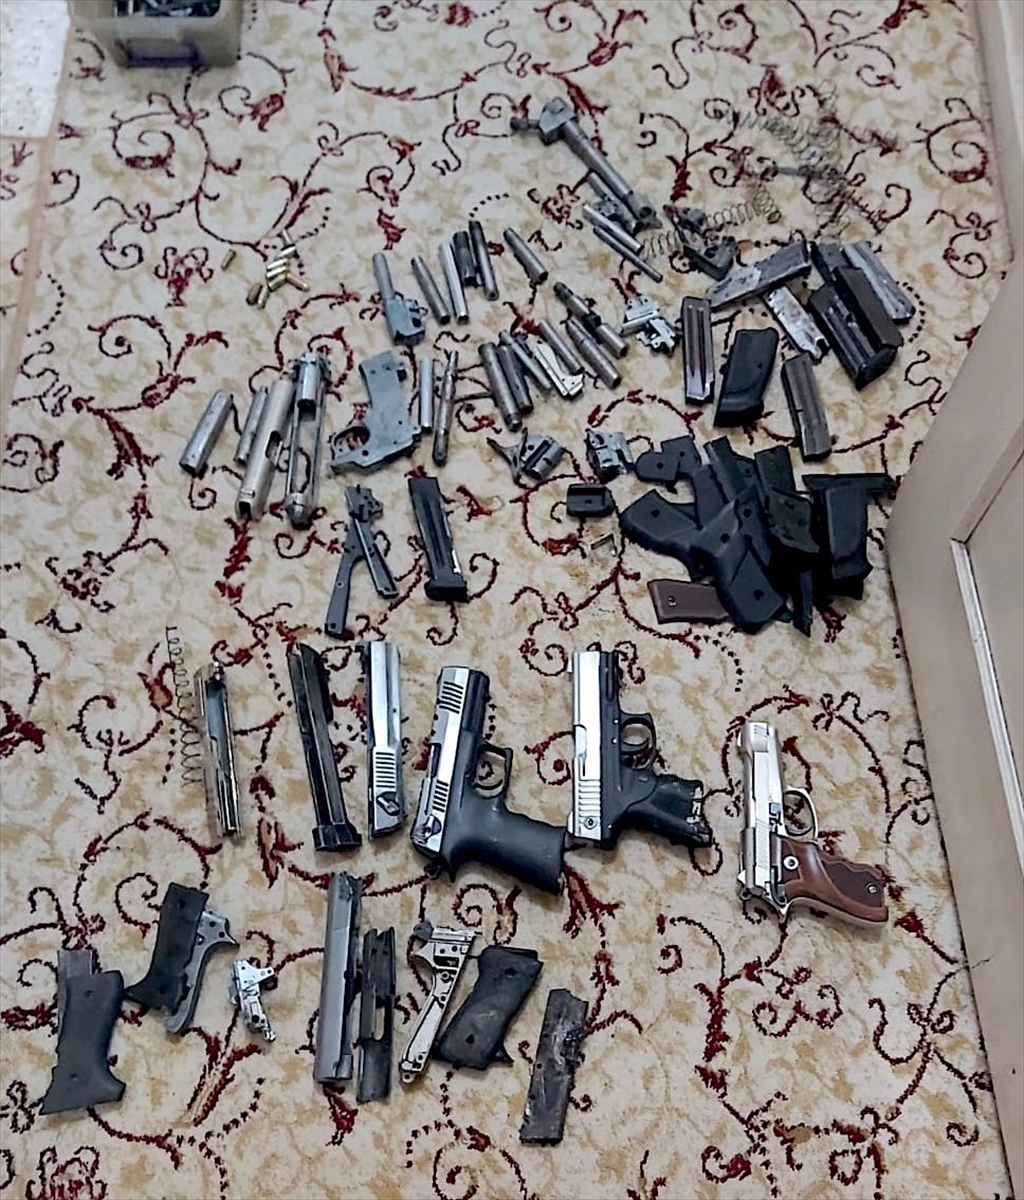 Mersin'de kaçak silah imalatı ve ticareti yapan zanlı tutuklandı